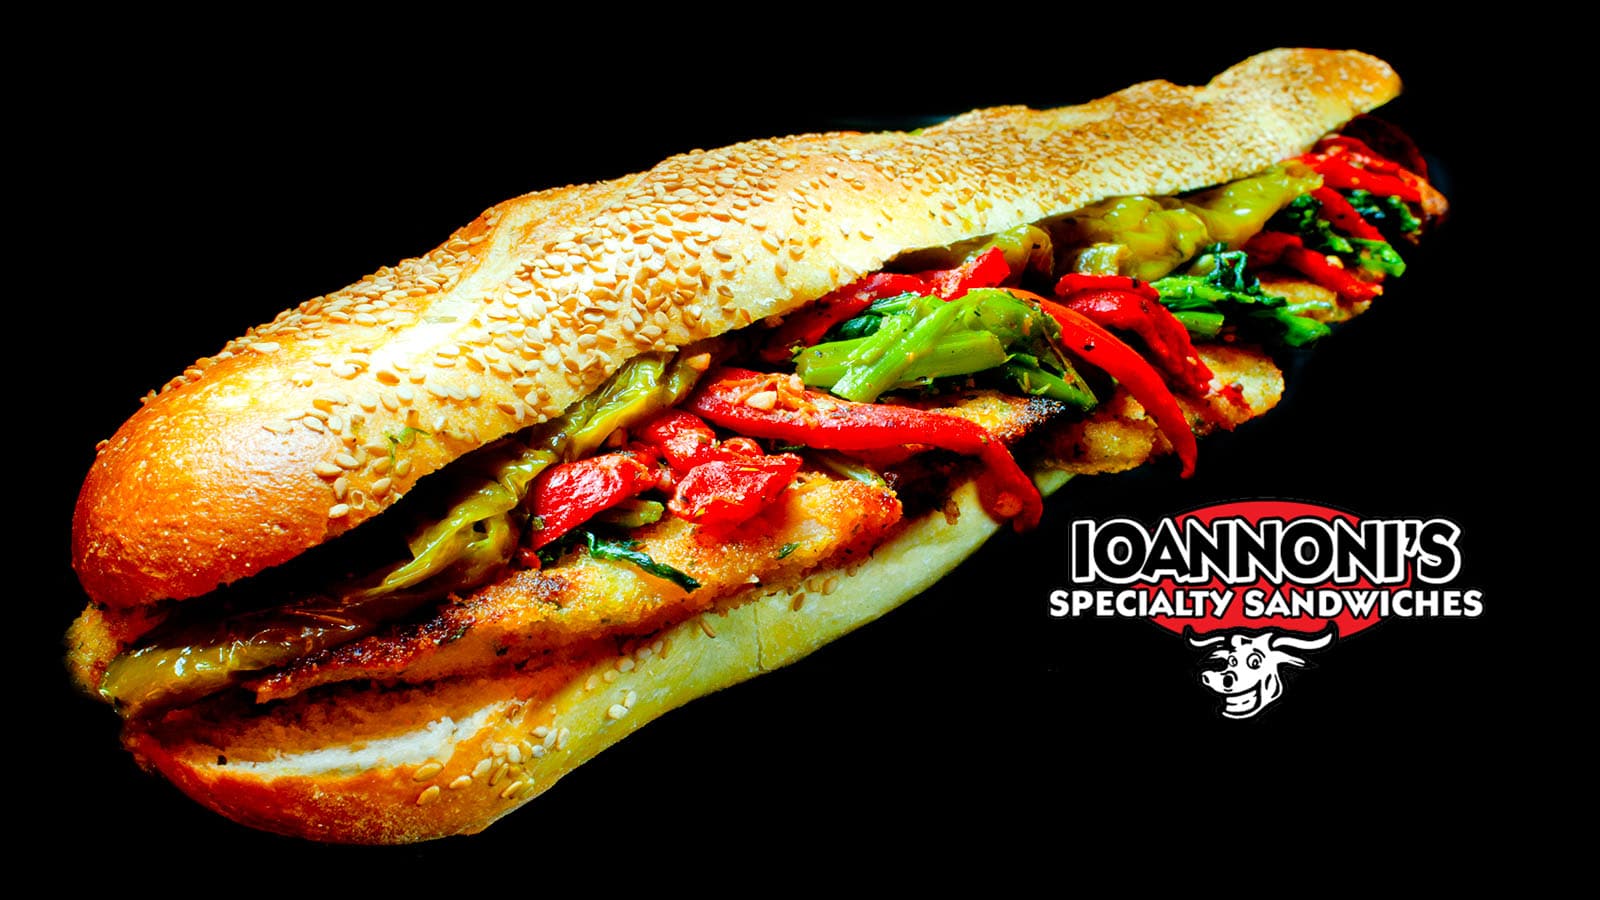 Chicken Cutlet Sandwich from Ioannoni’s